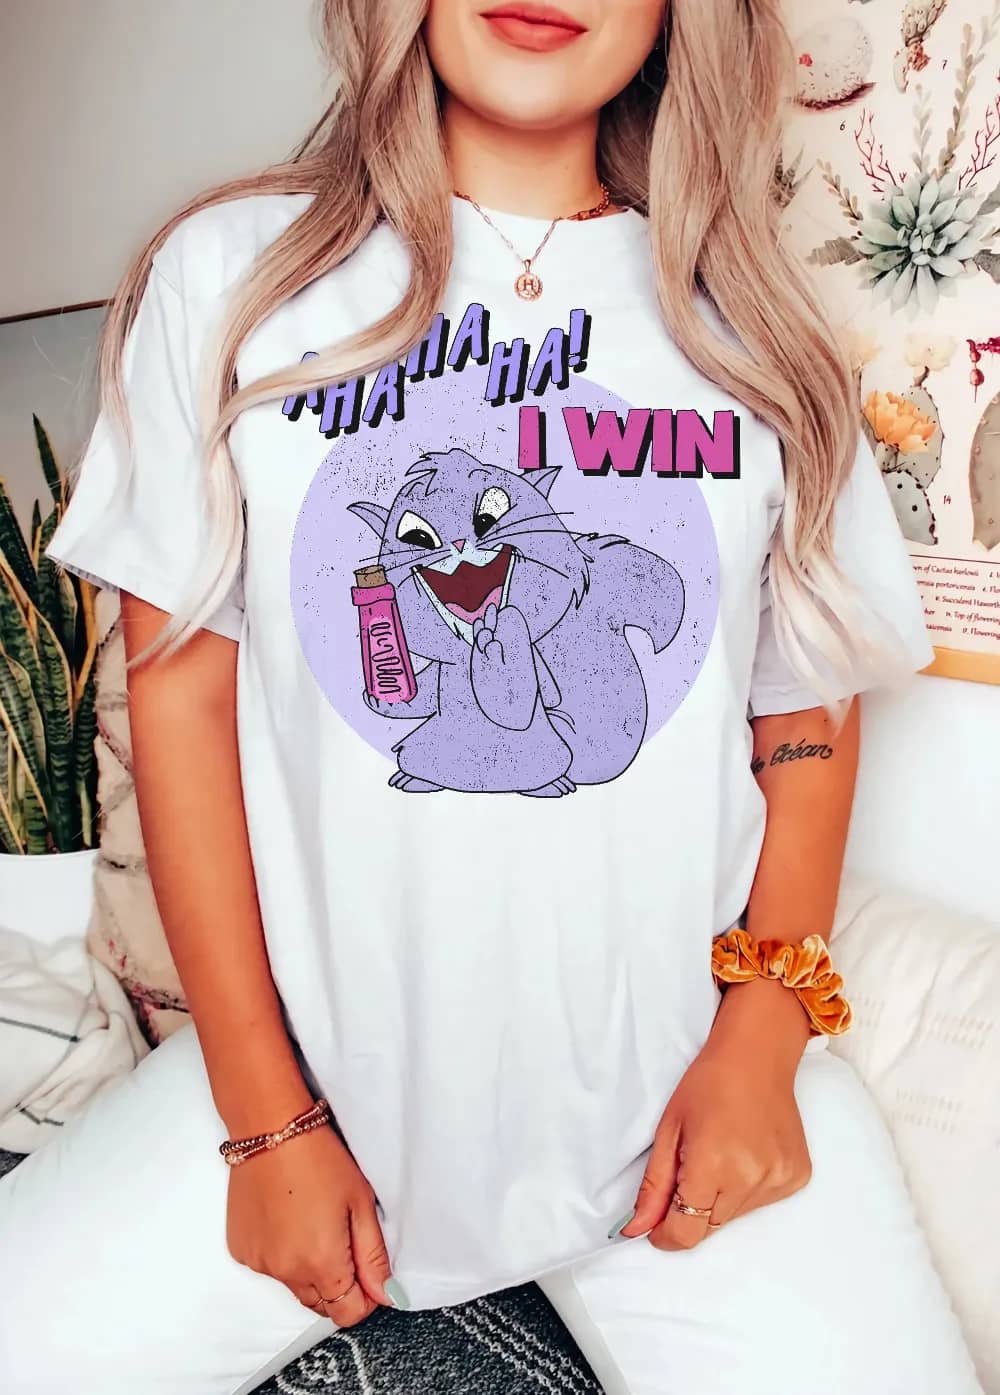 Inktee Store - Retro 90S Emperor'S New Groove Yzma Cat Ahaha I Win Comfort Colors Shirt - Disney Family Vacation - Disneyworld Shirts - Disneyland Vacation Image